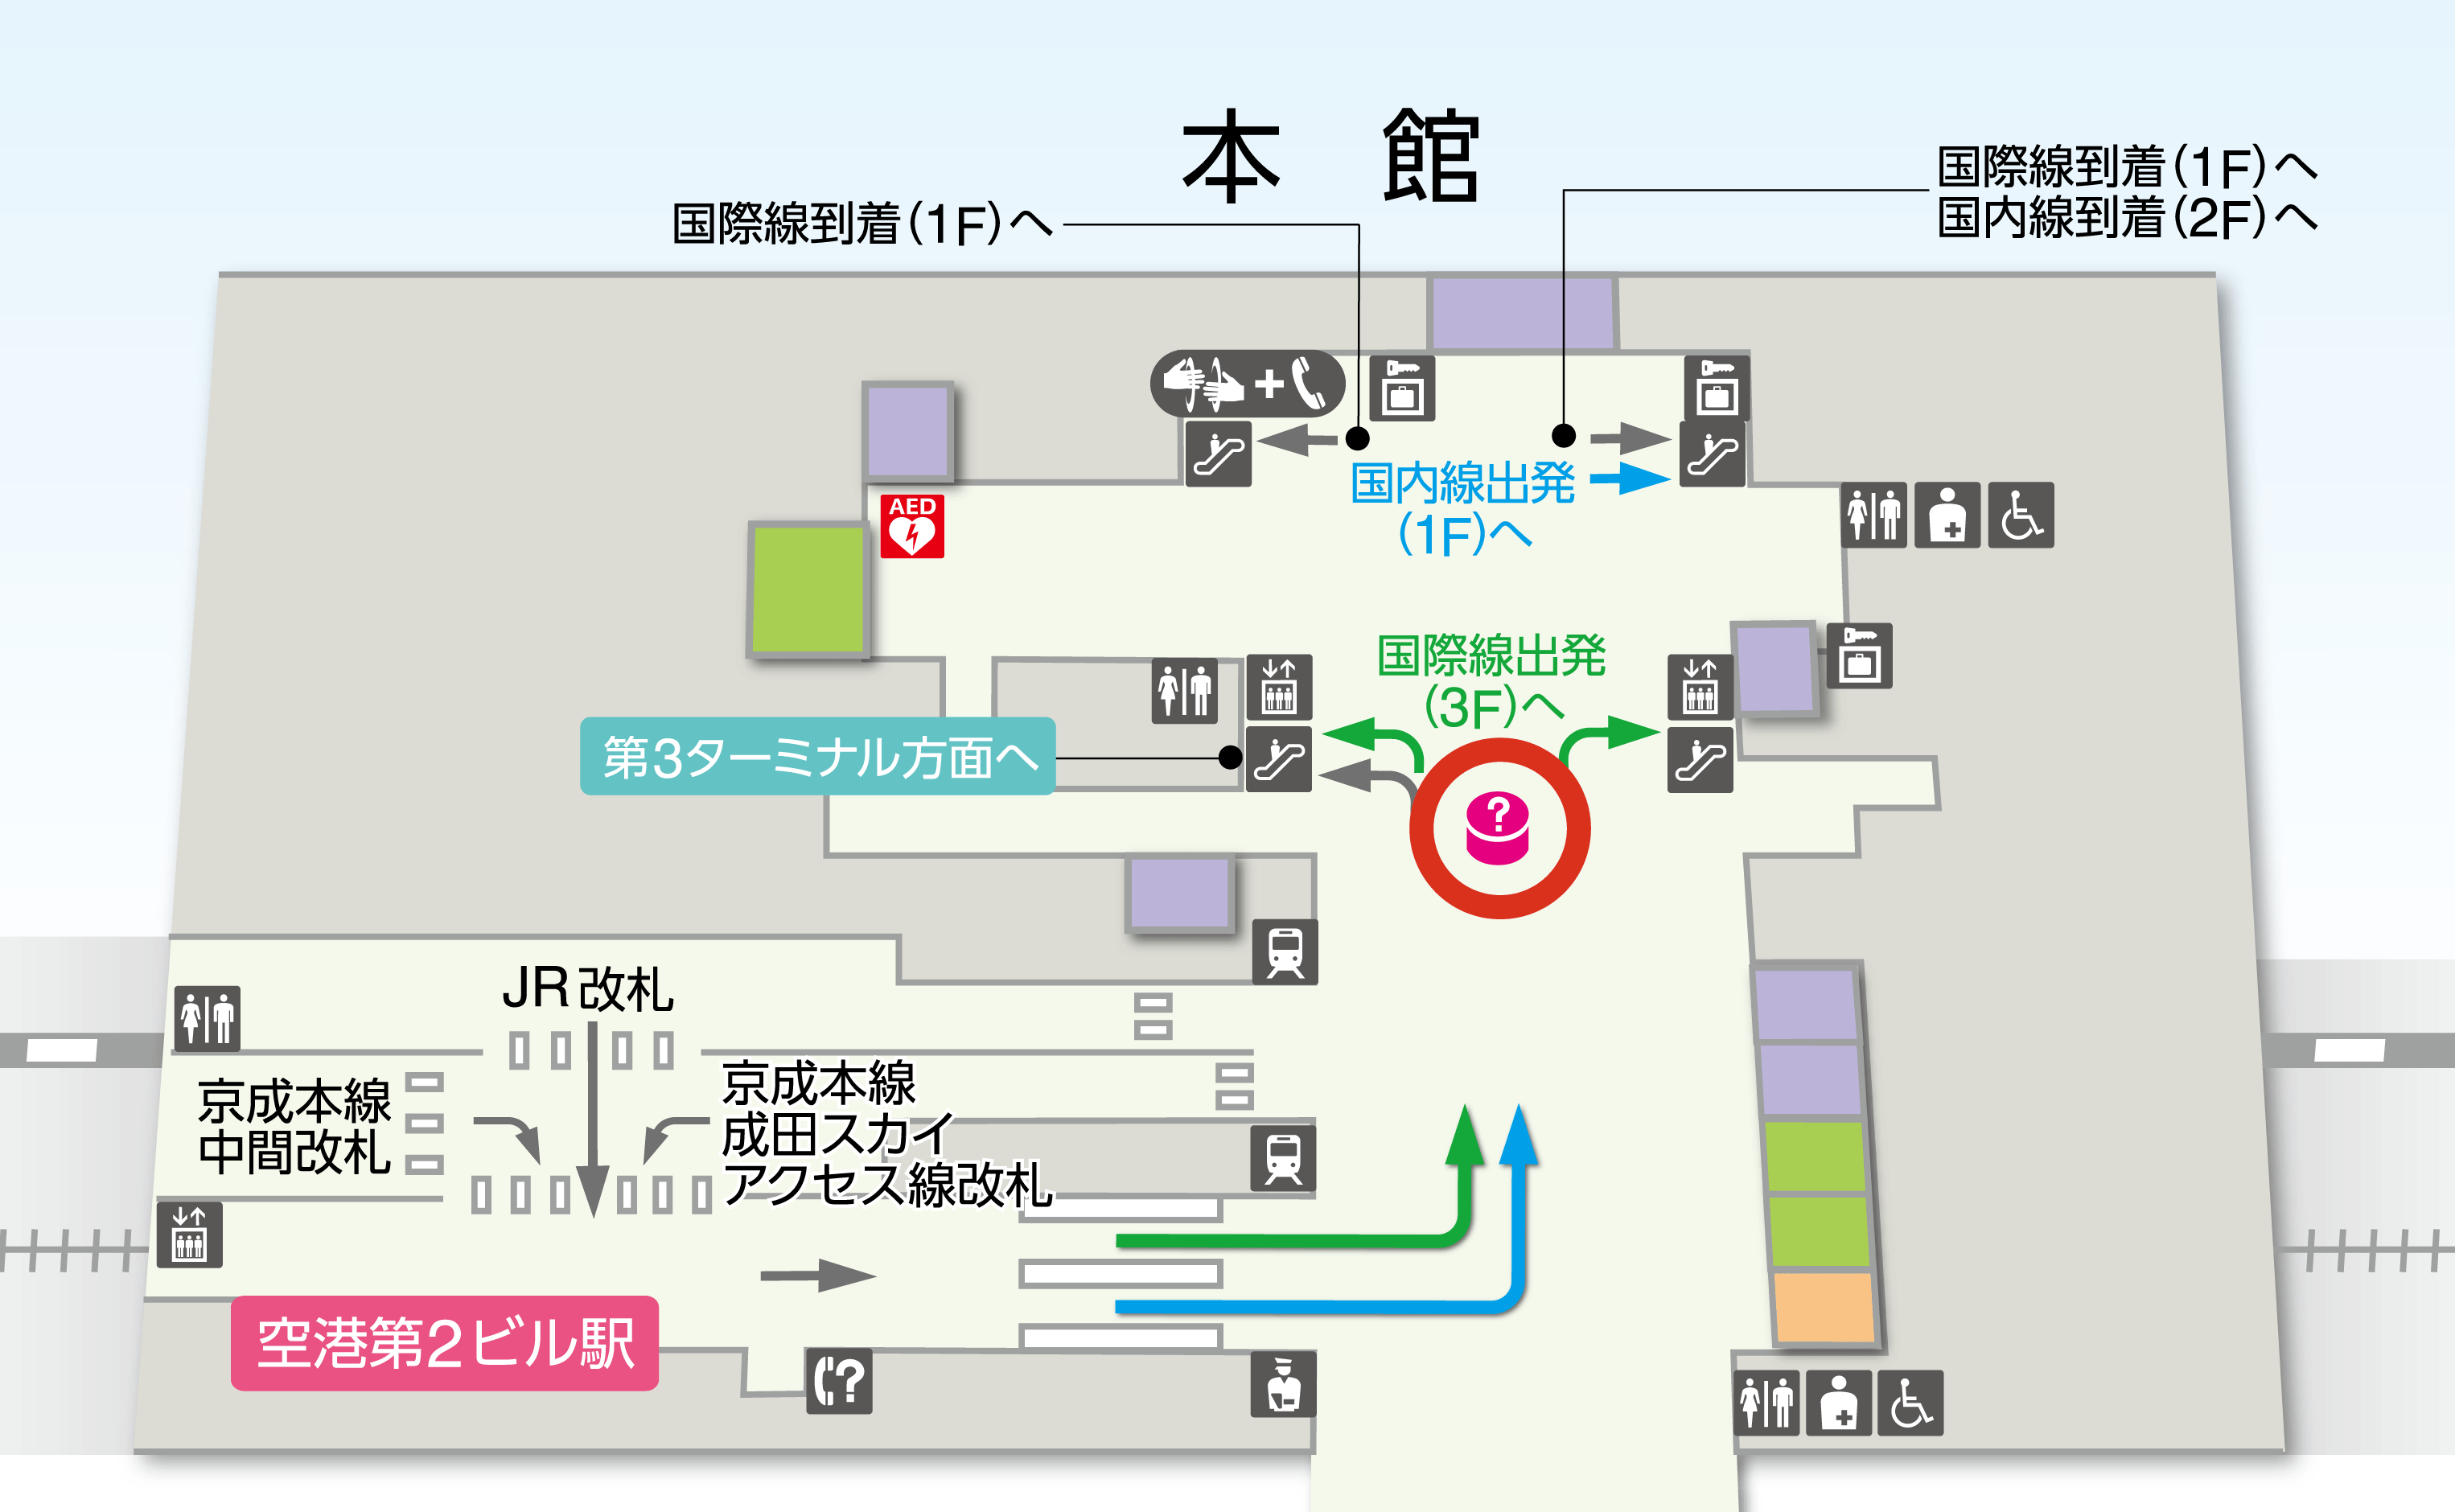 第2ターミナル本館B1Fフロアマップの図